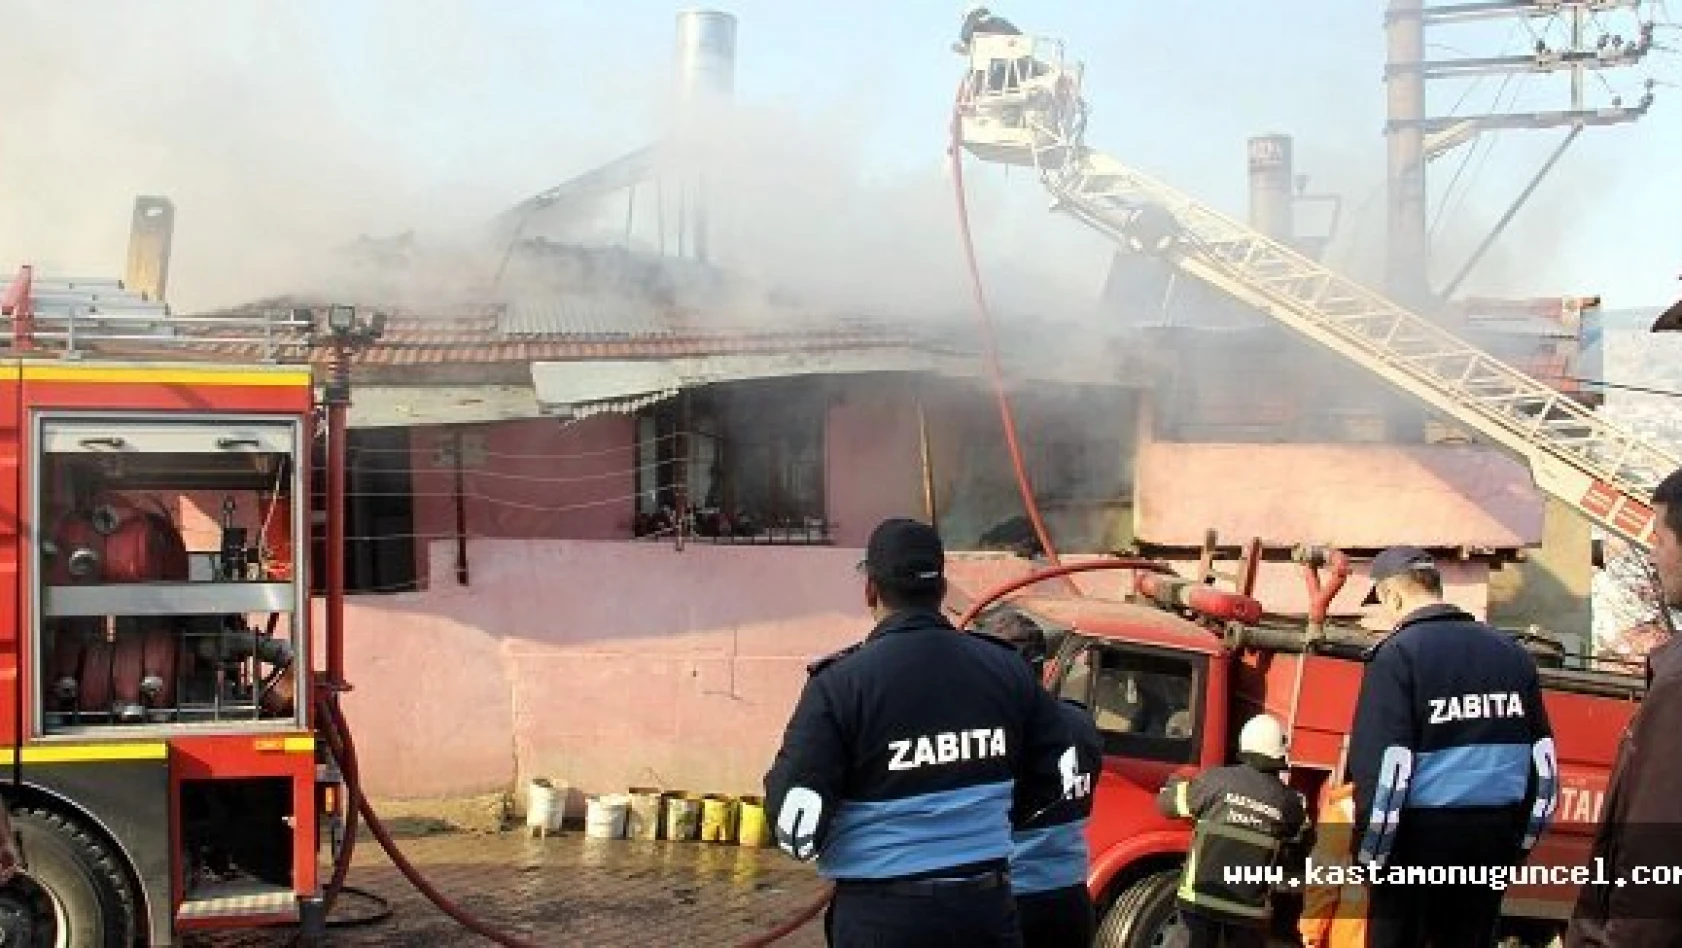 Kastamonu'da Yangın: 6 Kişilik Aile Evsiz Kaldı